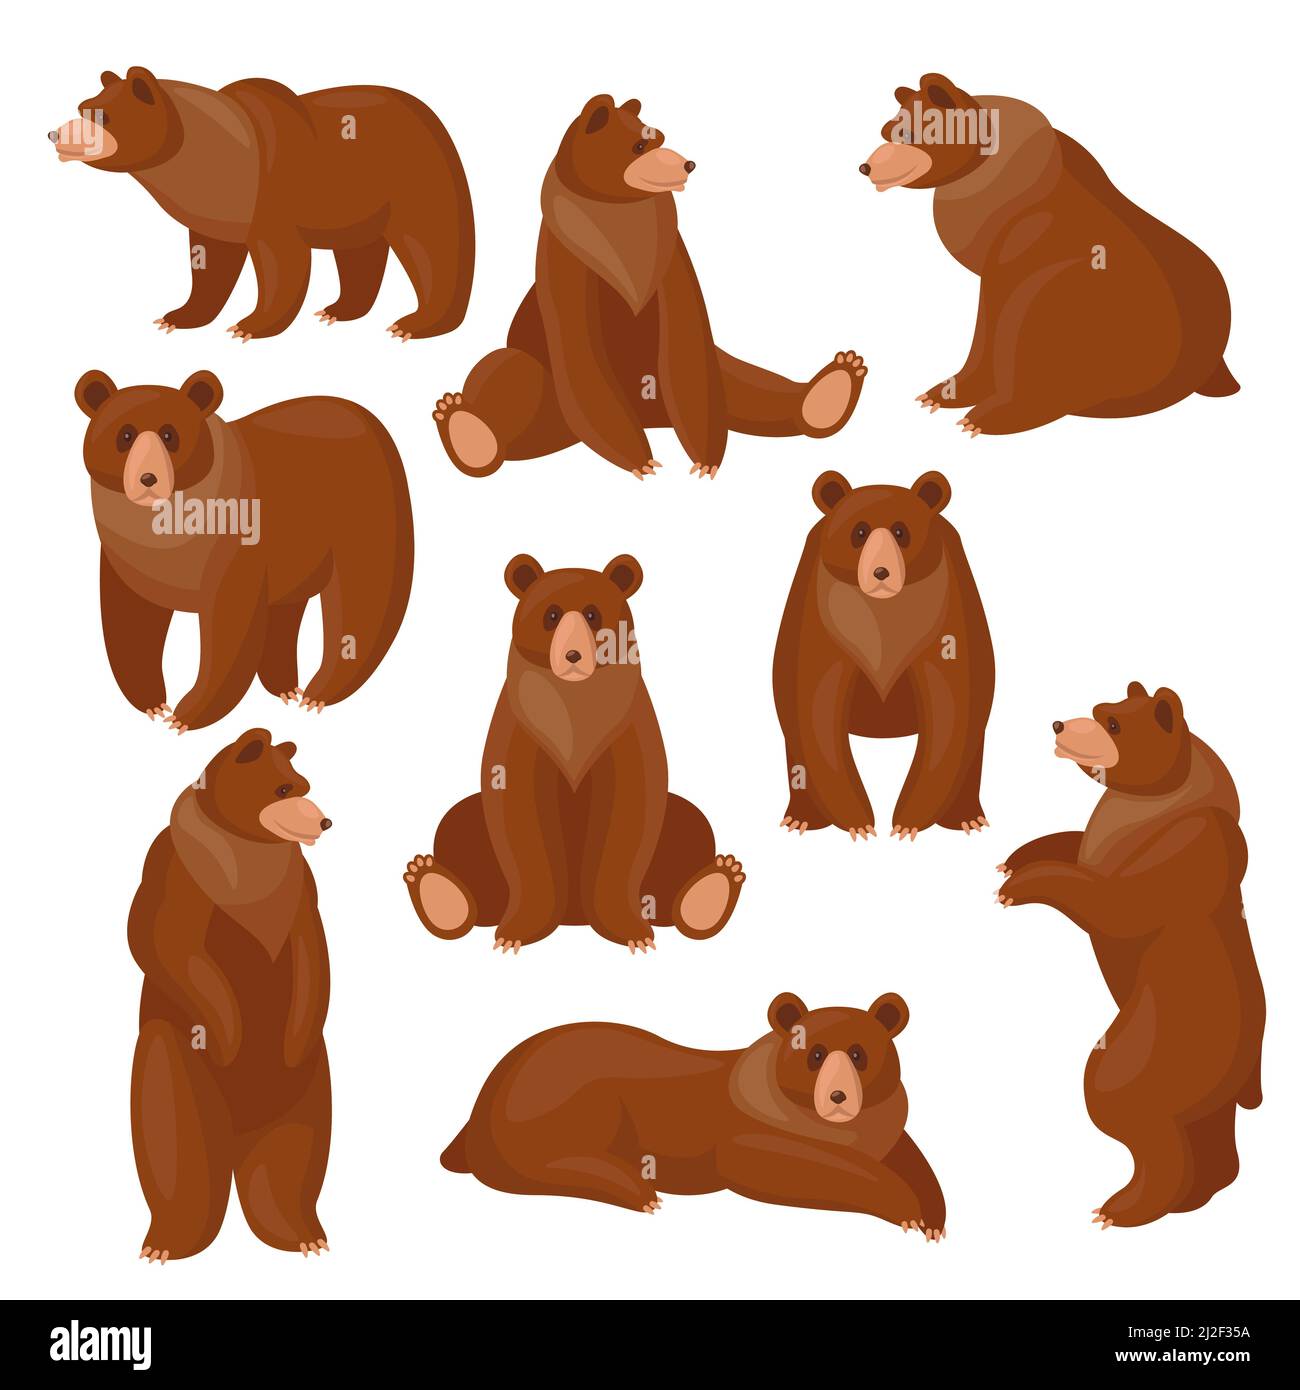 Ensemble ours bruns. Différentes vues et poses de grizzly de dessin animé mignon assis, debout, marchant isolé sur blanc. Illustrations vectorielles pour la faune, pr Illustration de Vecteur